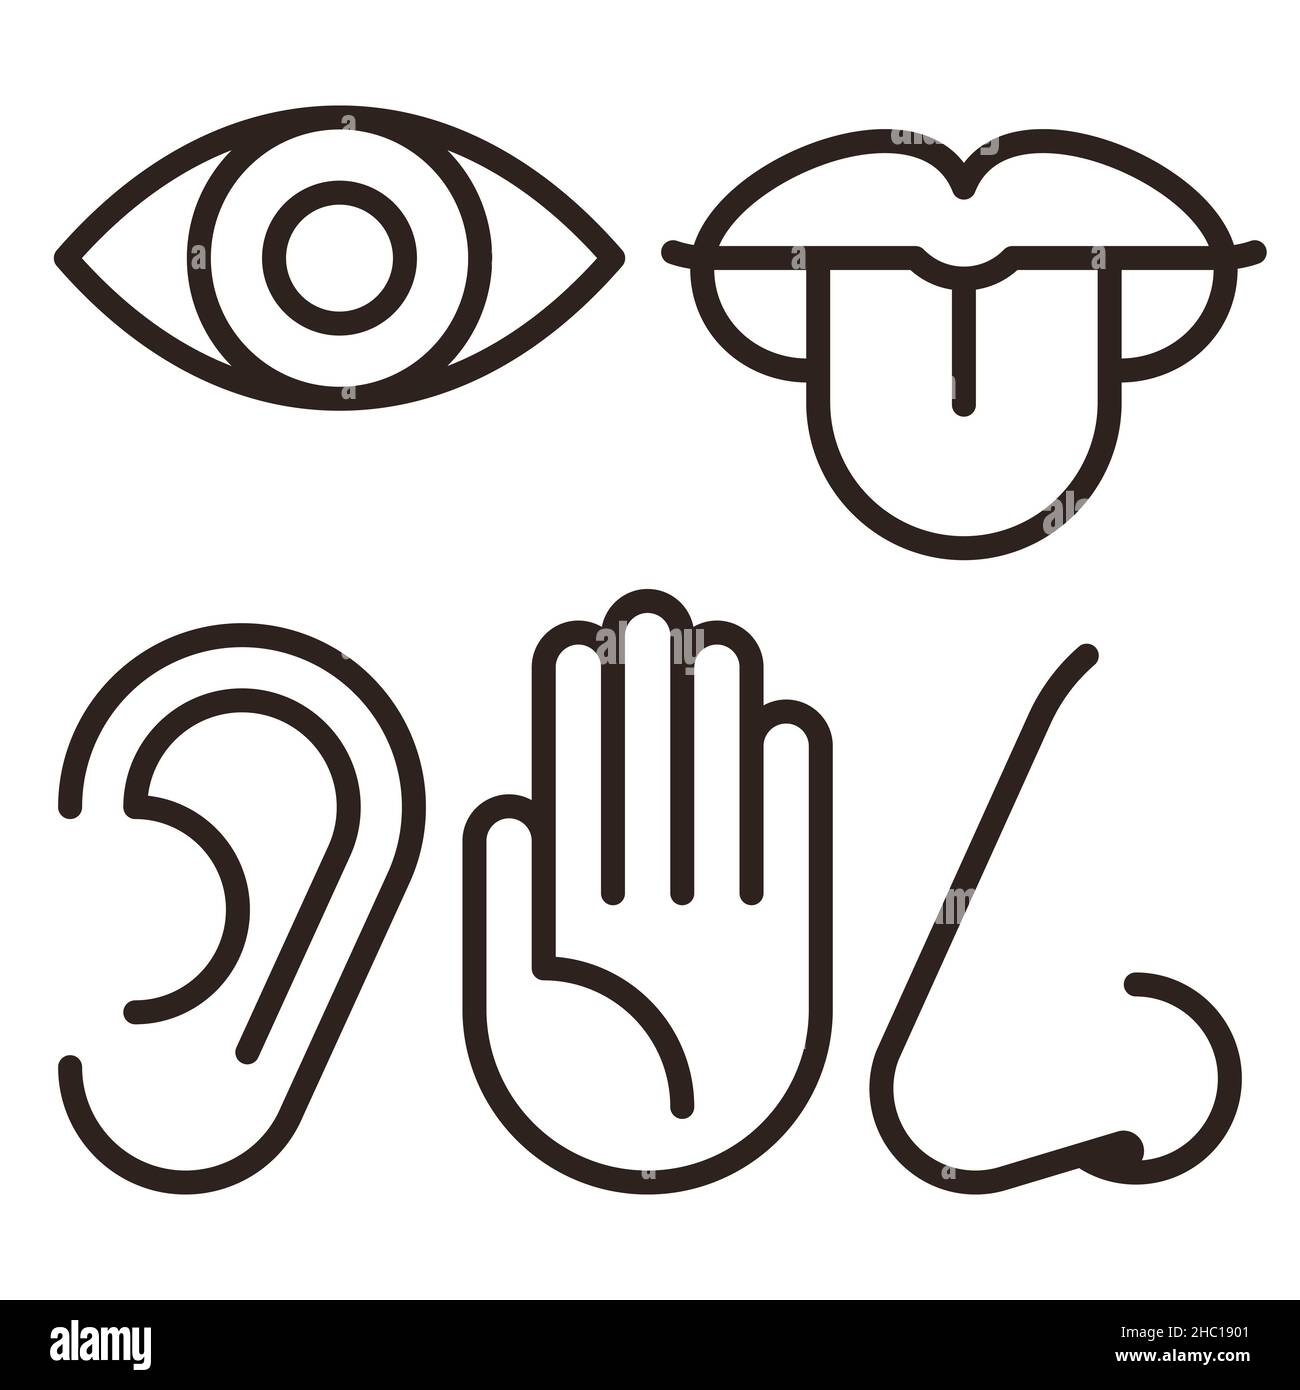 Auge, Ohr, Lippen, Nase und Hand - fünf Sinne des menschlichen Nervensystems. Symbol für Sinnesorgane isoliert auf weißem Hintergrund gesetzt Stockfoto